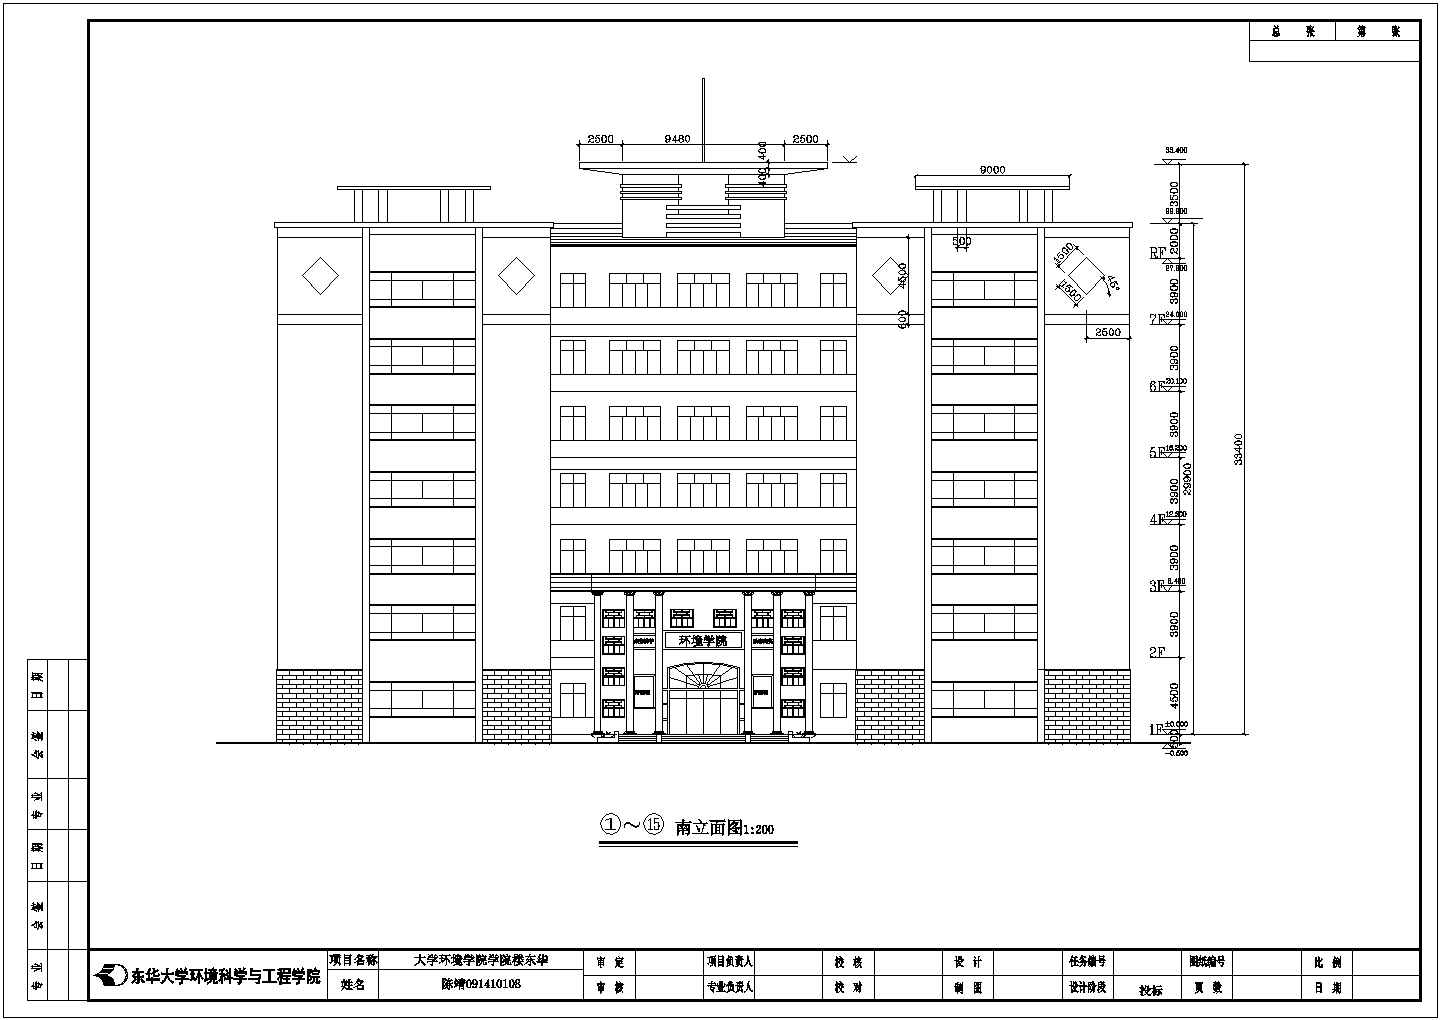 东华大学7层混凝土框架结构环境学院楼建筑施工图